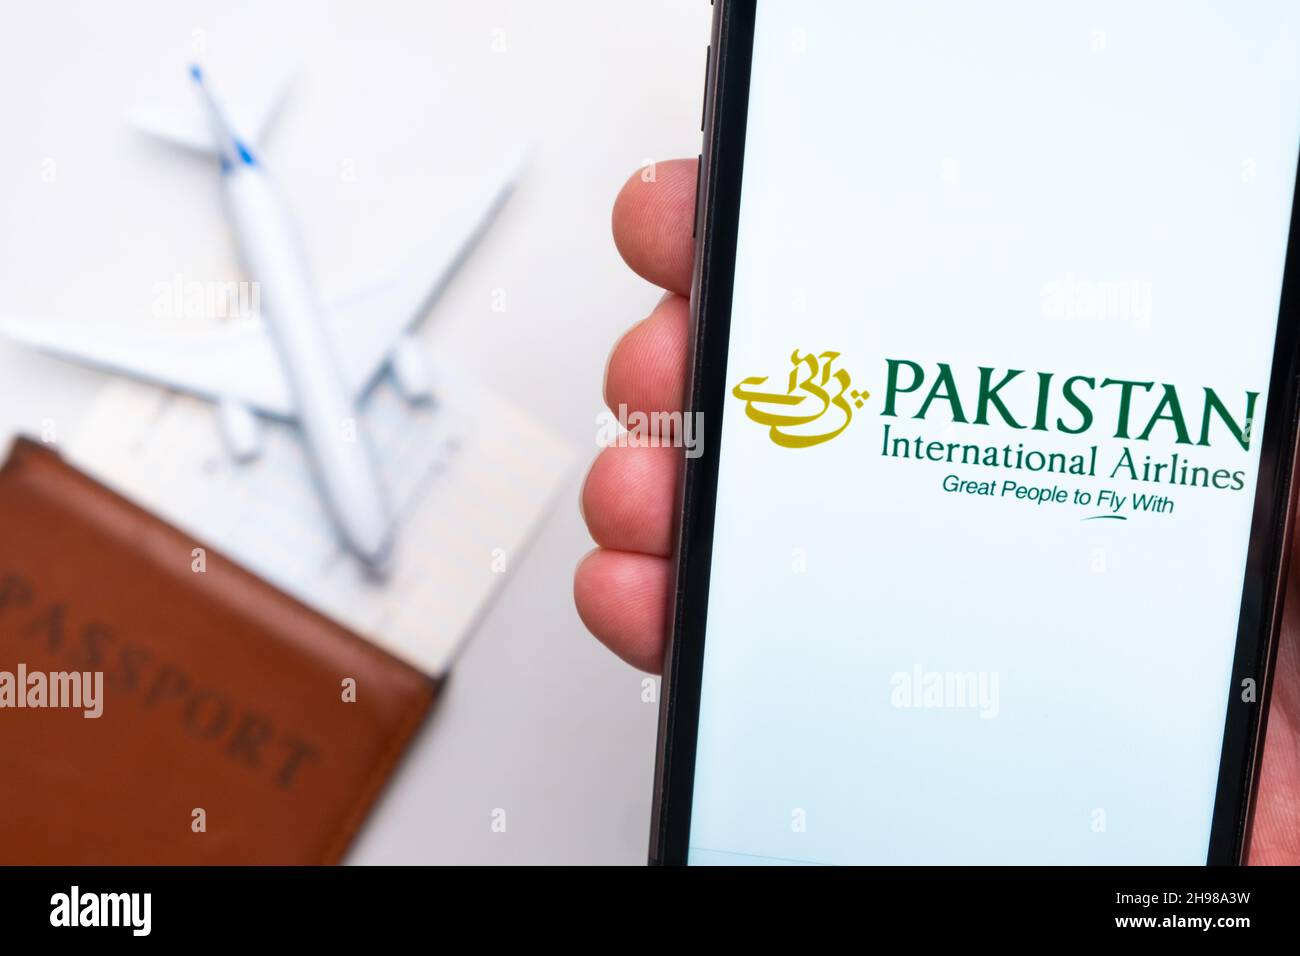 Logo Pakistan International Airlines sur l'écran du téléphone mobile avec un avion, un passeport et une carte d'embarquement en arrière-plan.Le concept de l'application mobile des compagnies aériennes.Novembre 2021, San Francisco, États-Unis Banque D'Images